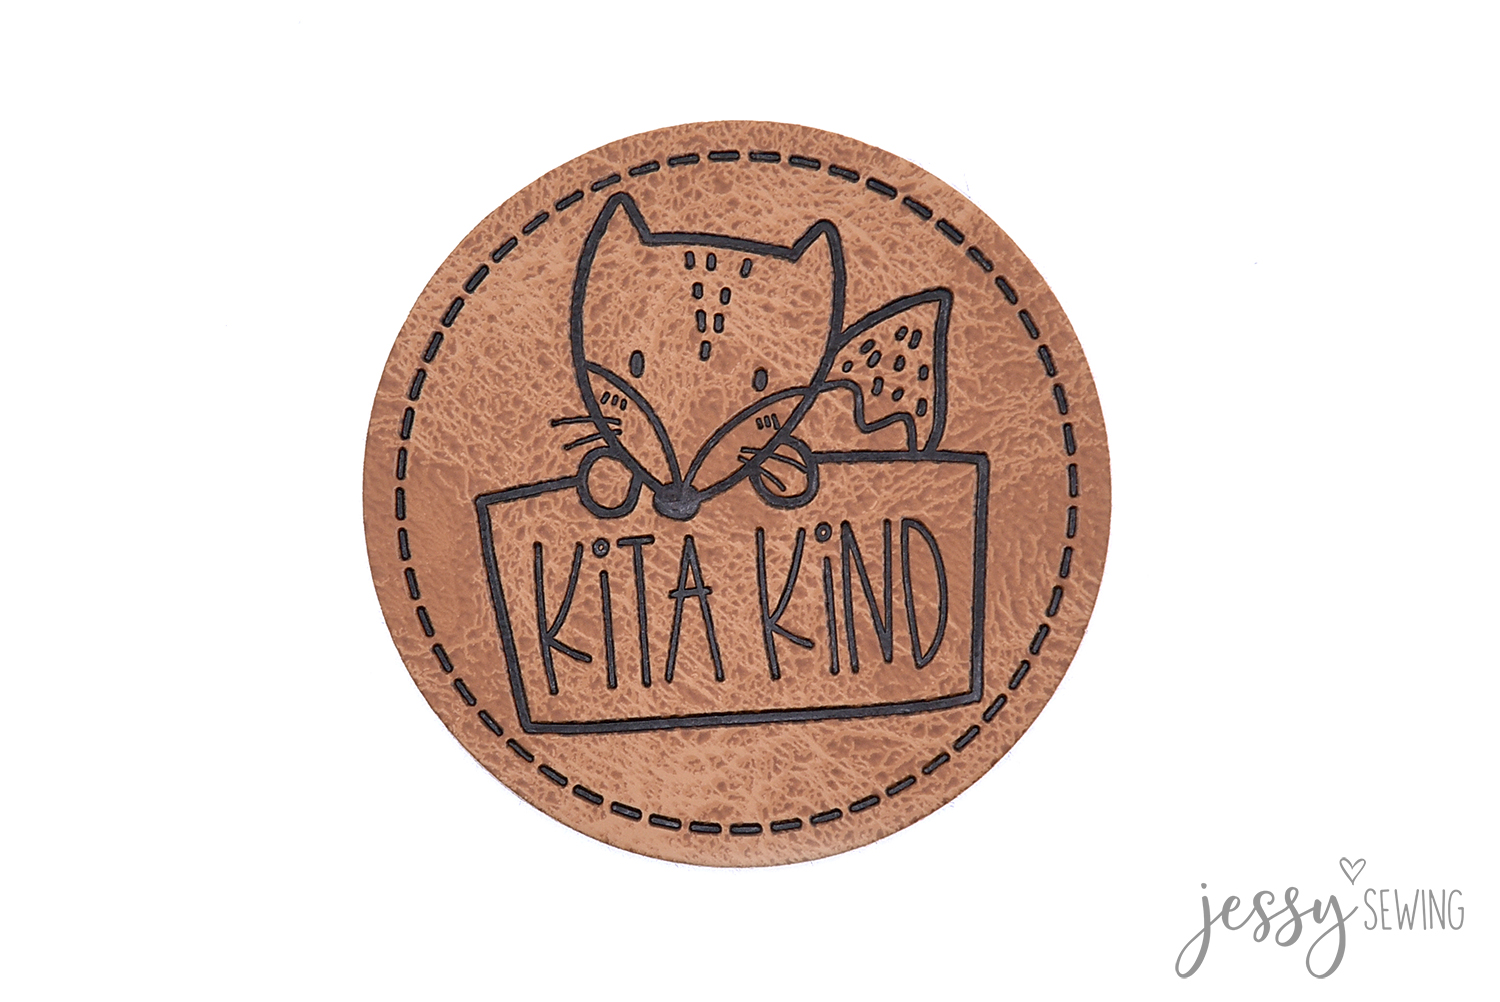 #35 Label "Kita Kind"